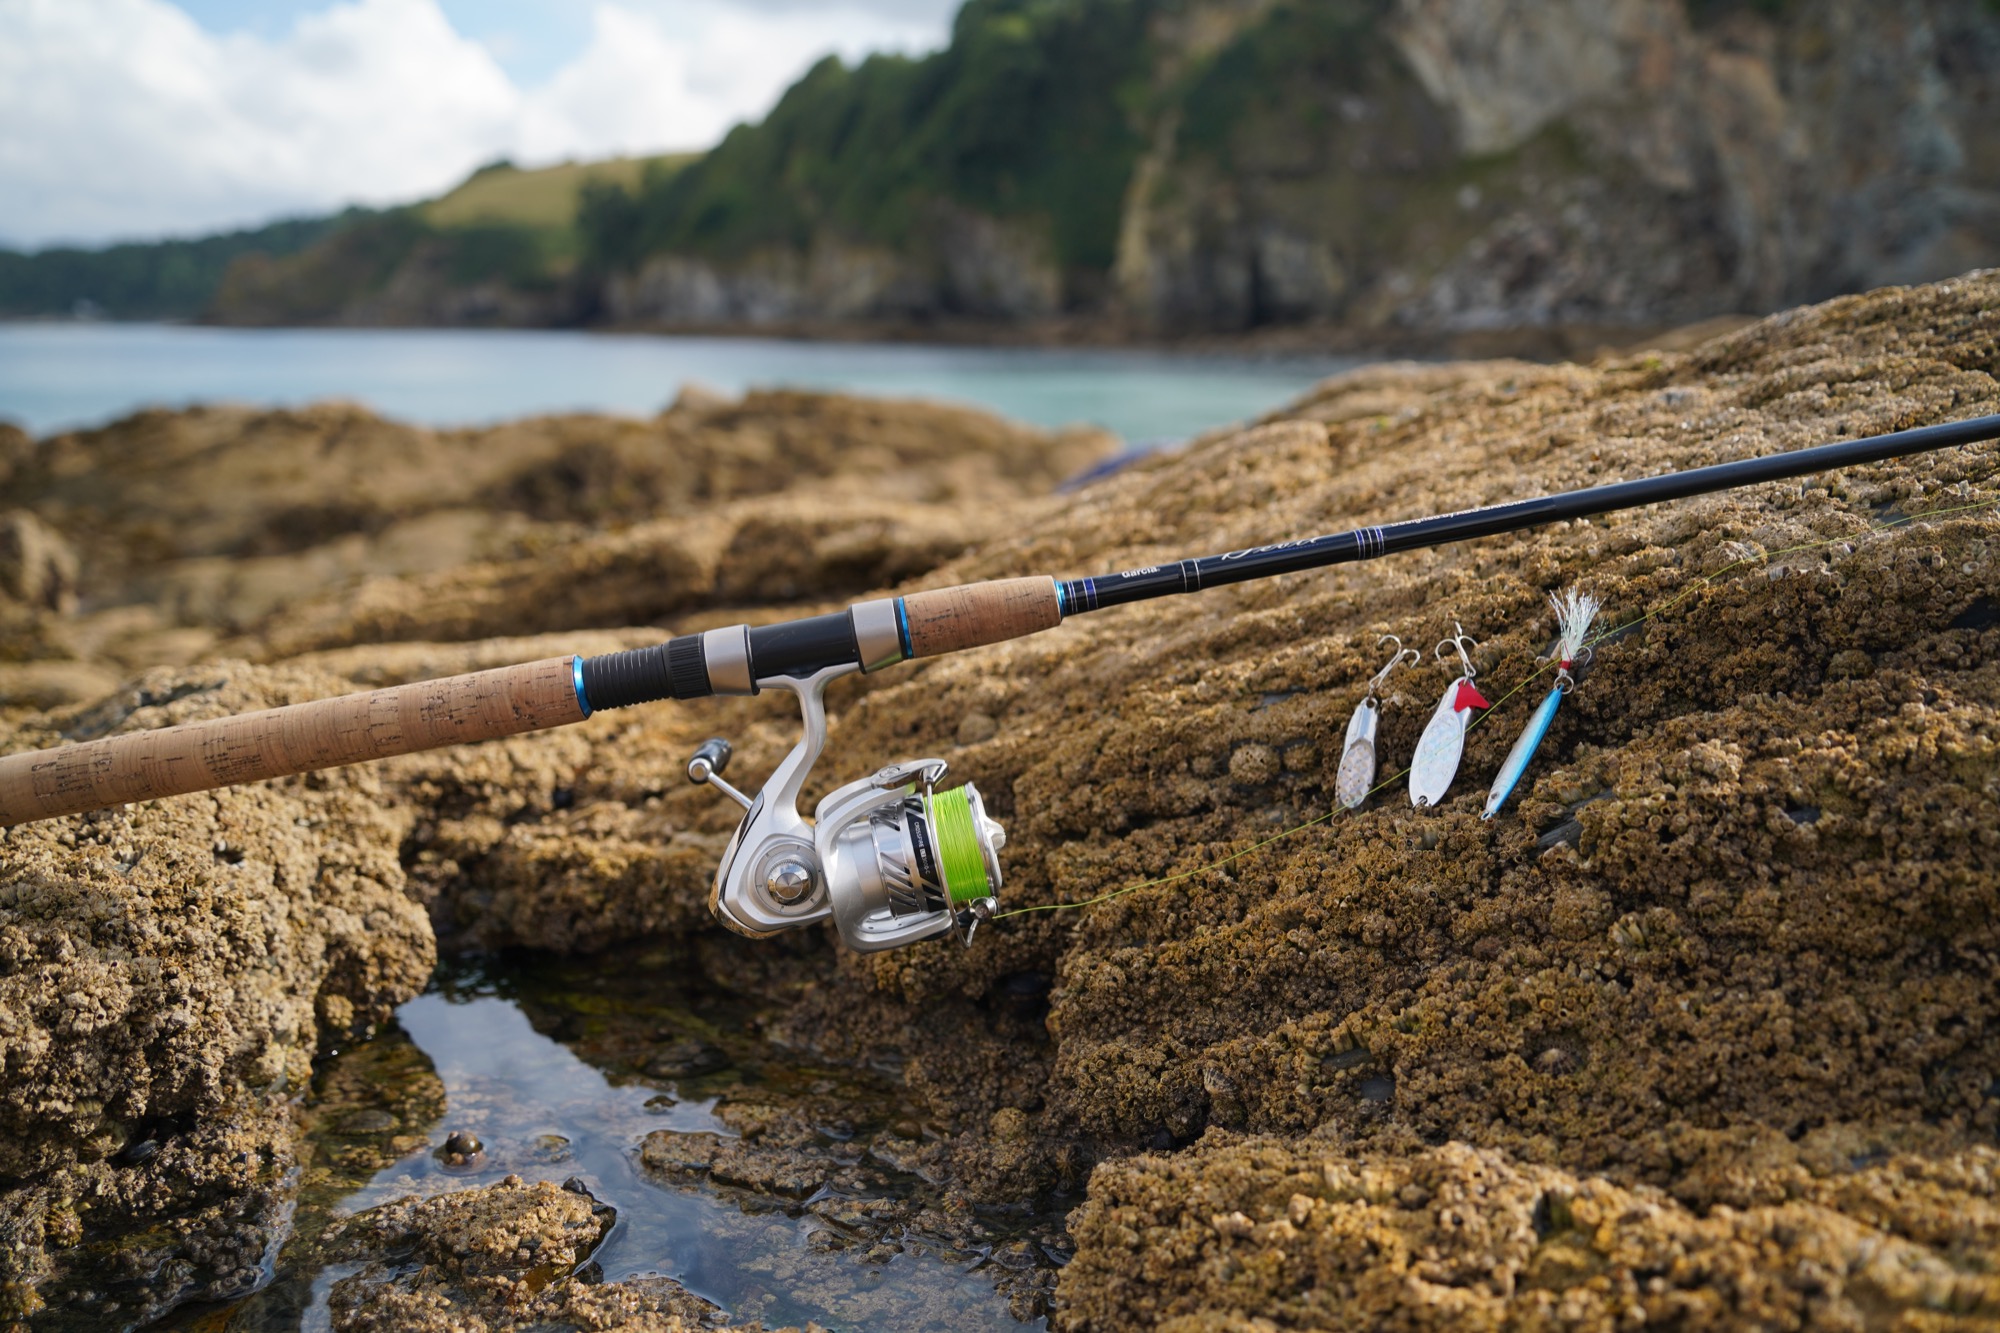 mackerel fishing lure set up 